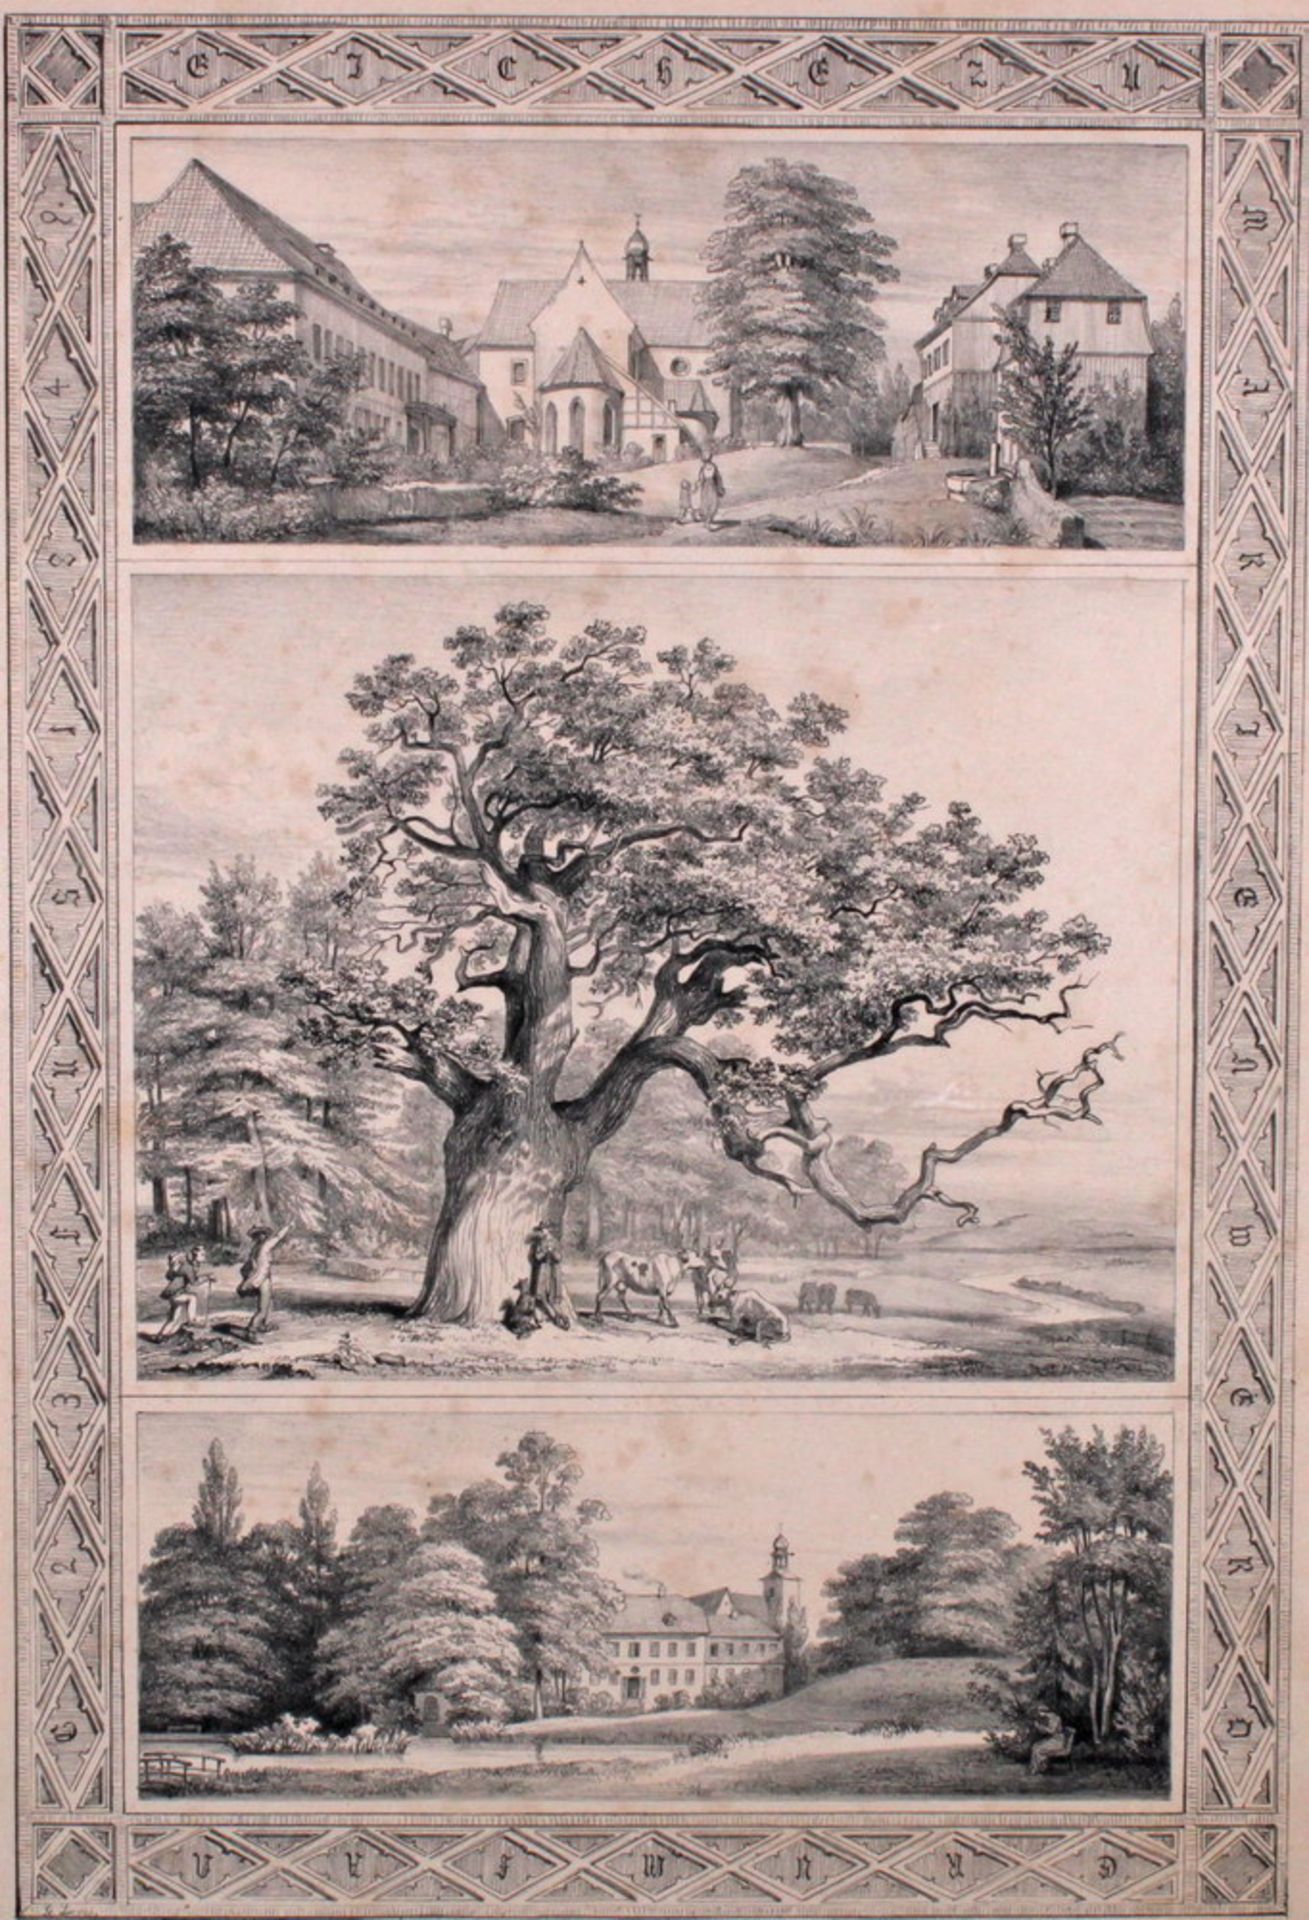 Lithografie, "Eiche zu Marienberda, Hinüberscher Garten Hannover", 1847, Georg Laves, 46.5 x 31.5